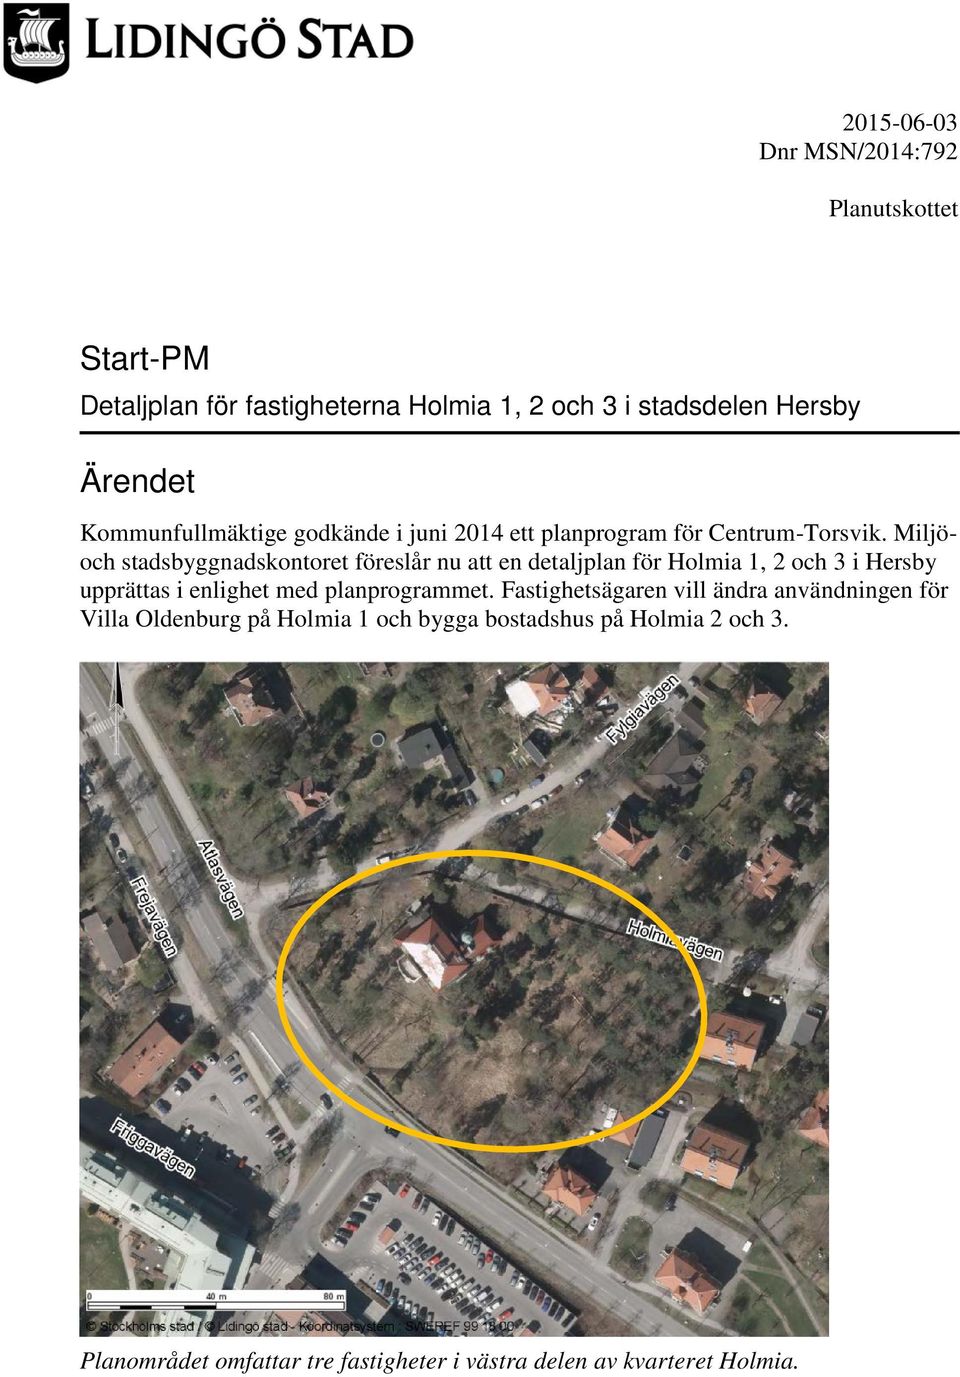 Miljöoch stadsbyggnadskontoret föreslår nu att en detaljplan för Holmia 1, 2 och 3 i Hersby upprättas i enlighet med